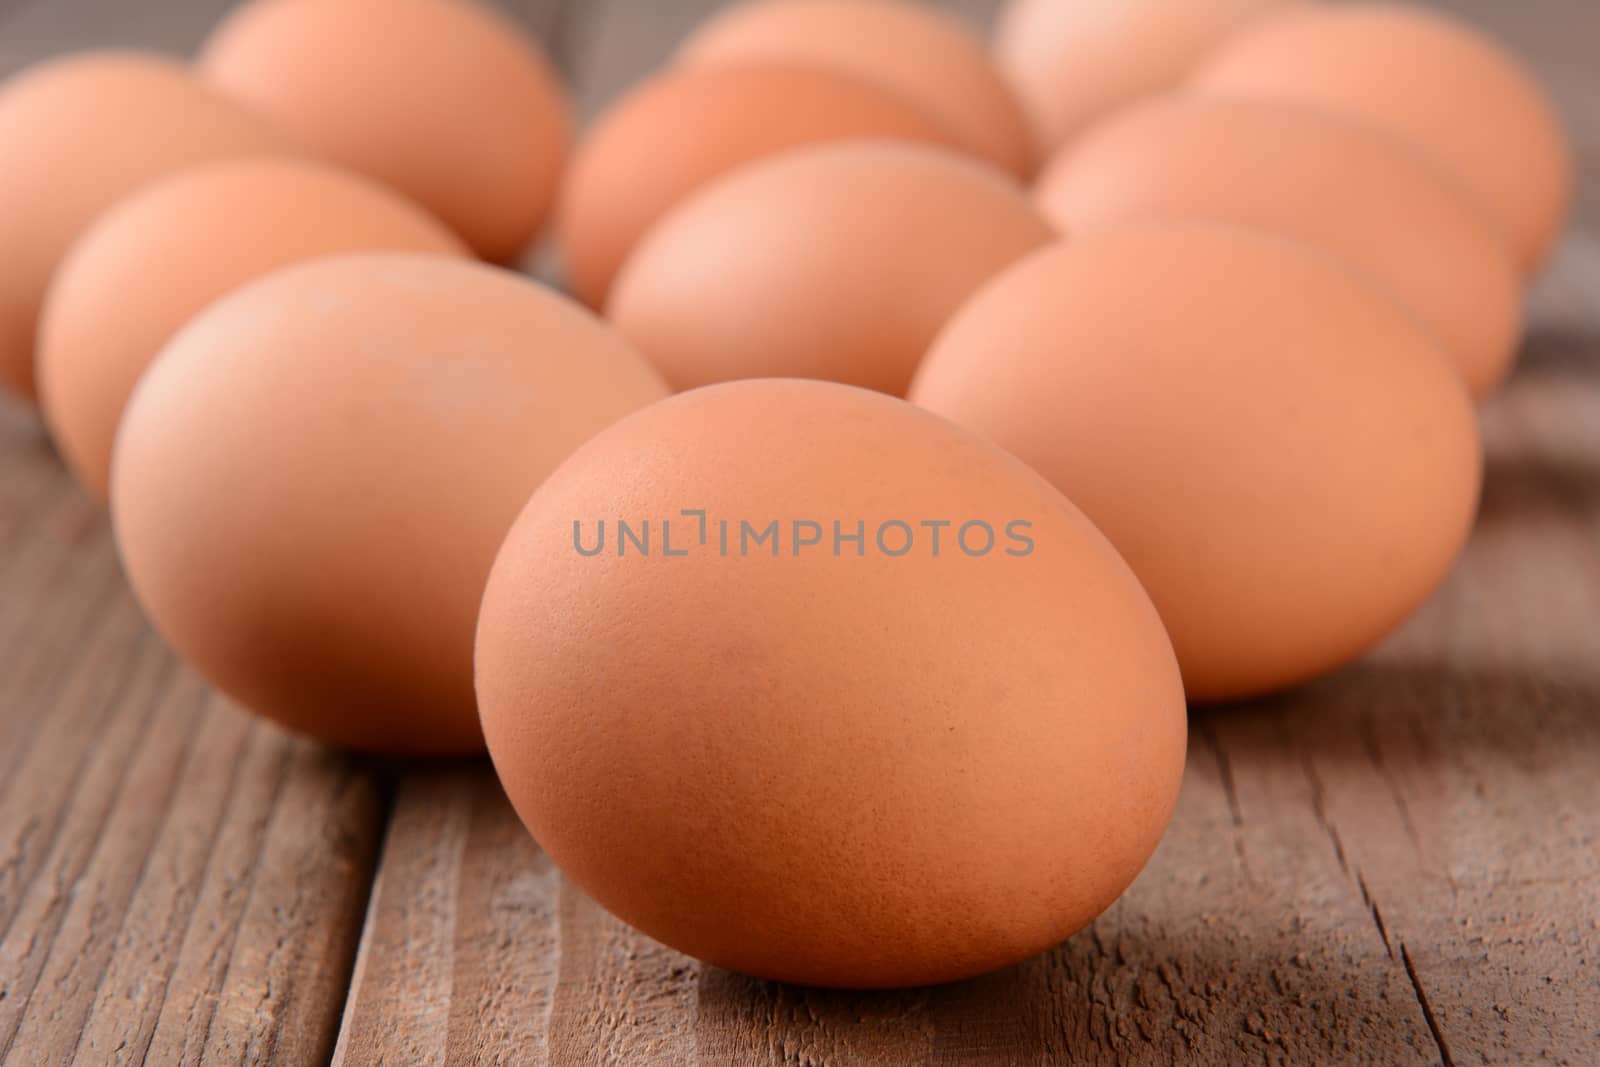 Brow Eggs Closeup by sCukrov